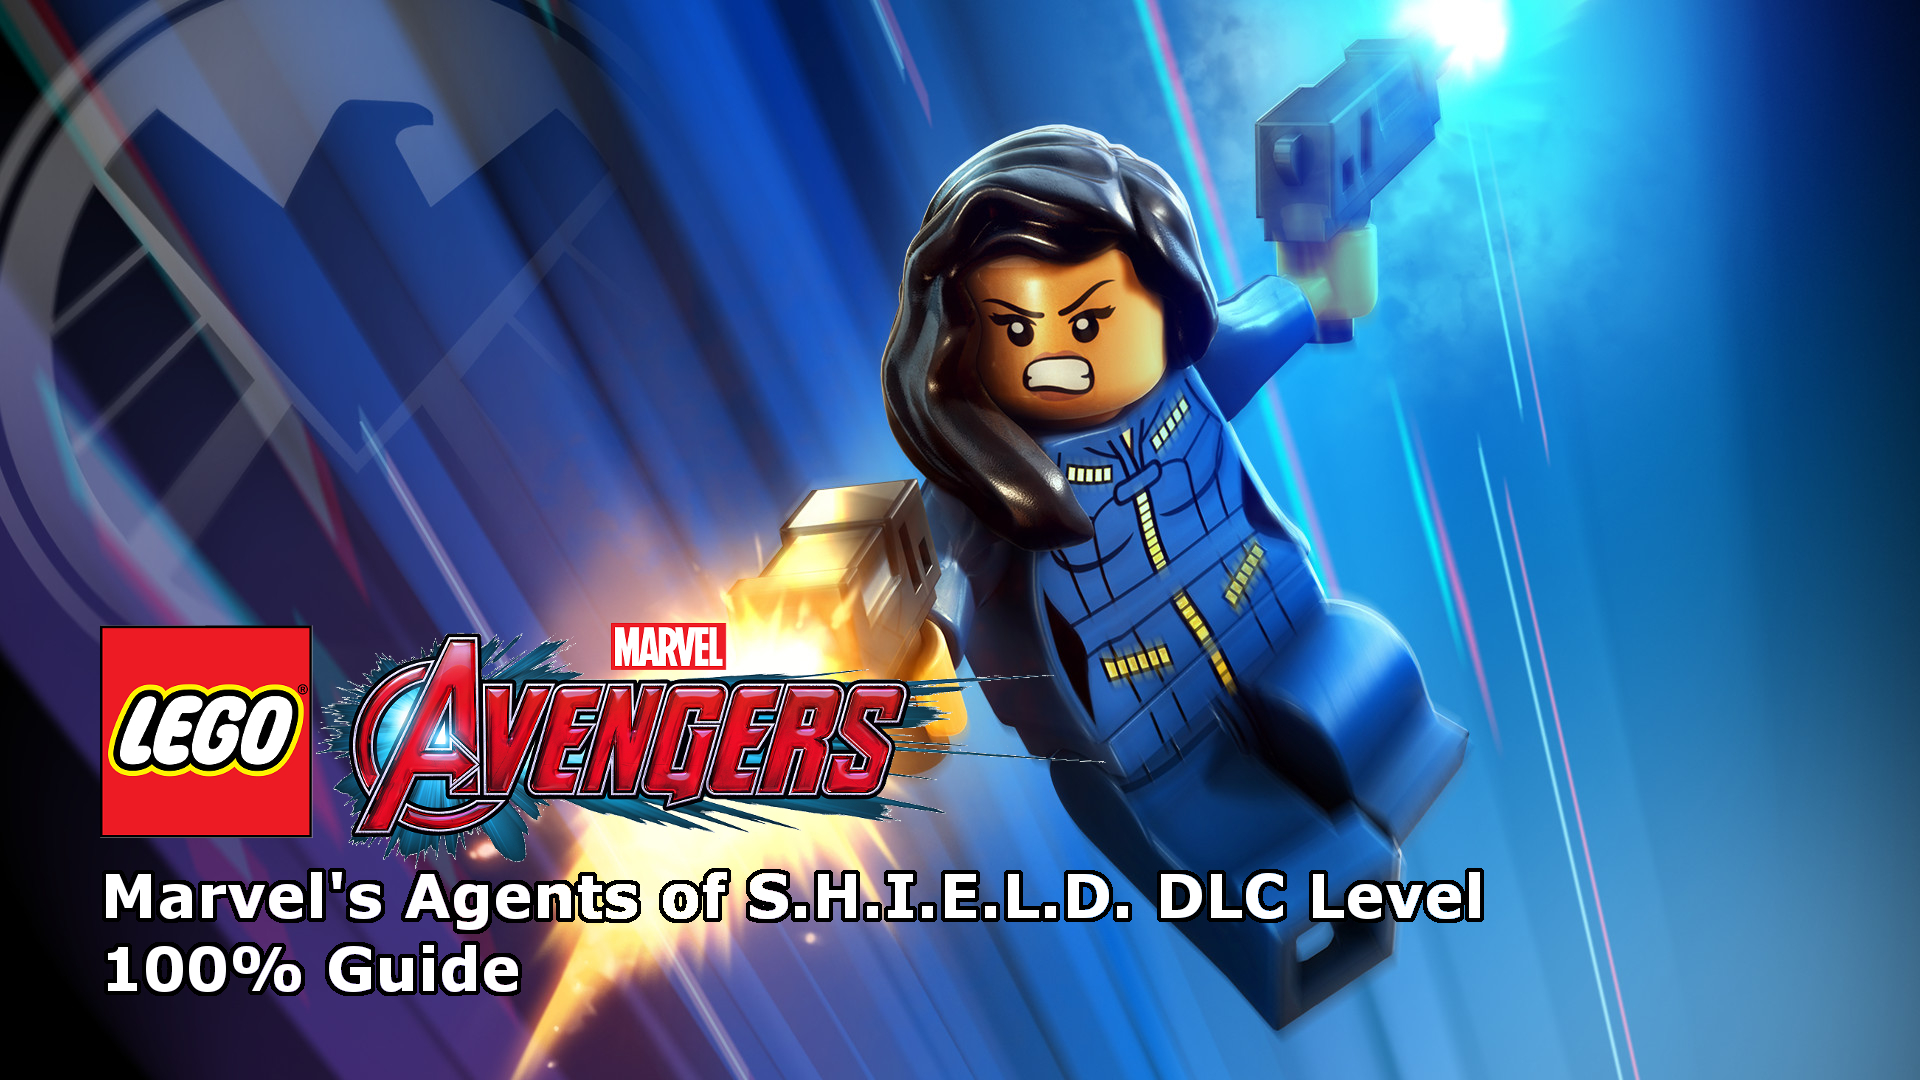 LEGO Marvel's Avengers - Marvel's Agents S.H.I.E.L.D. DLC